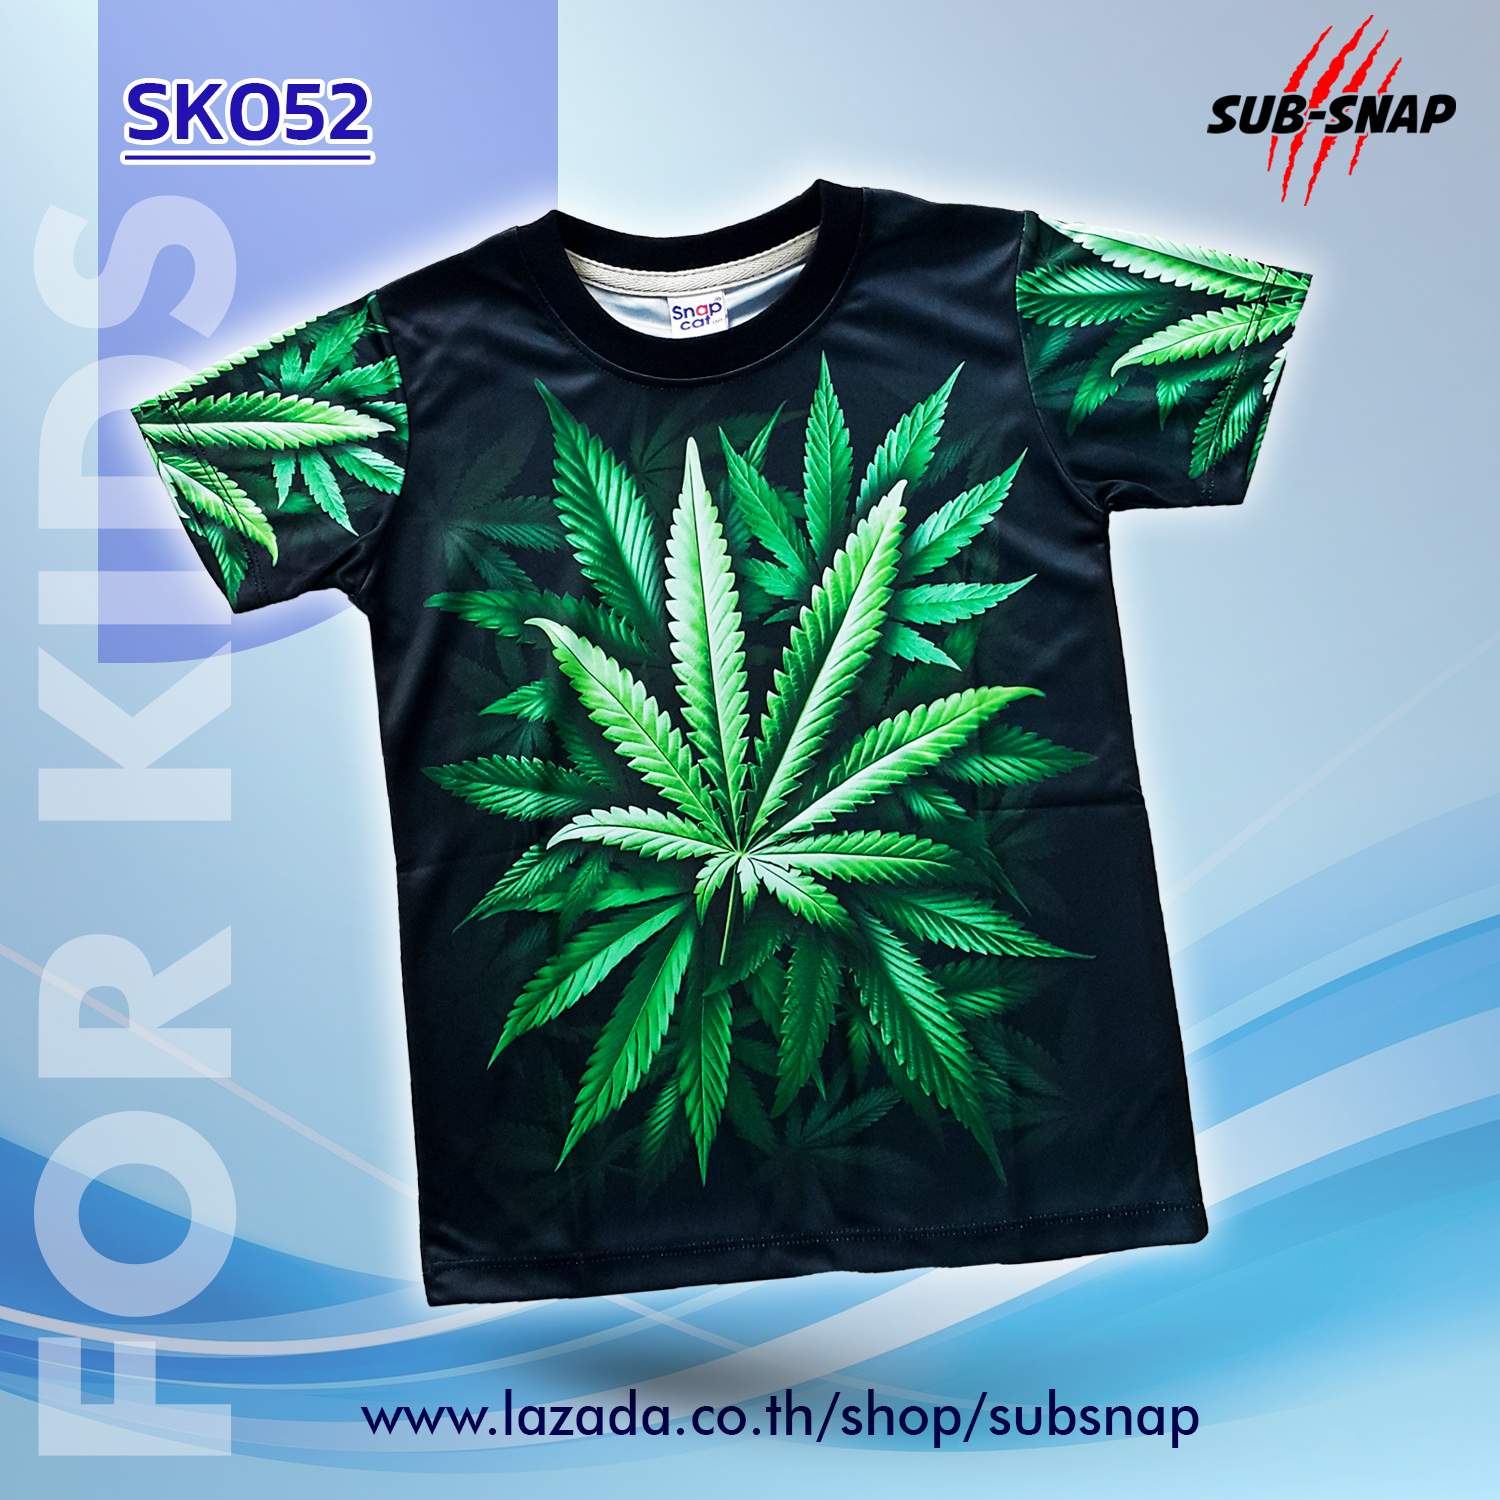 SNAPCAT SK052 เสื้อยืดเด็กอายุ 4-10 ปี เสื้อแฟชั่นเด็ก เสื้อยืดคอกลม เสื้อผ้าแฟชั่น เสื้อยืดพิมพ์ลาย GreenTea